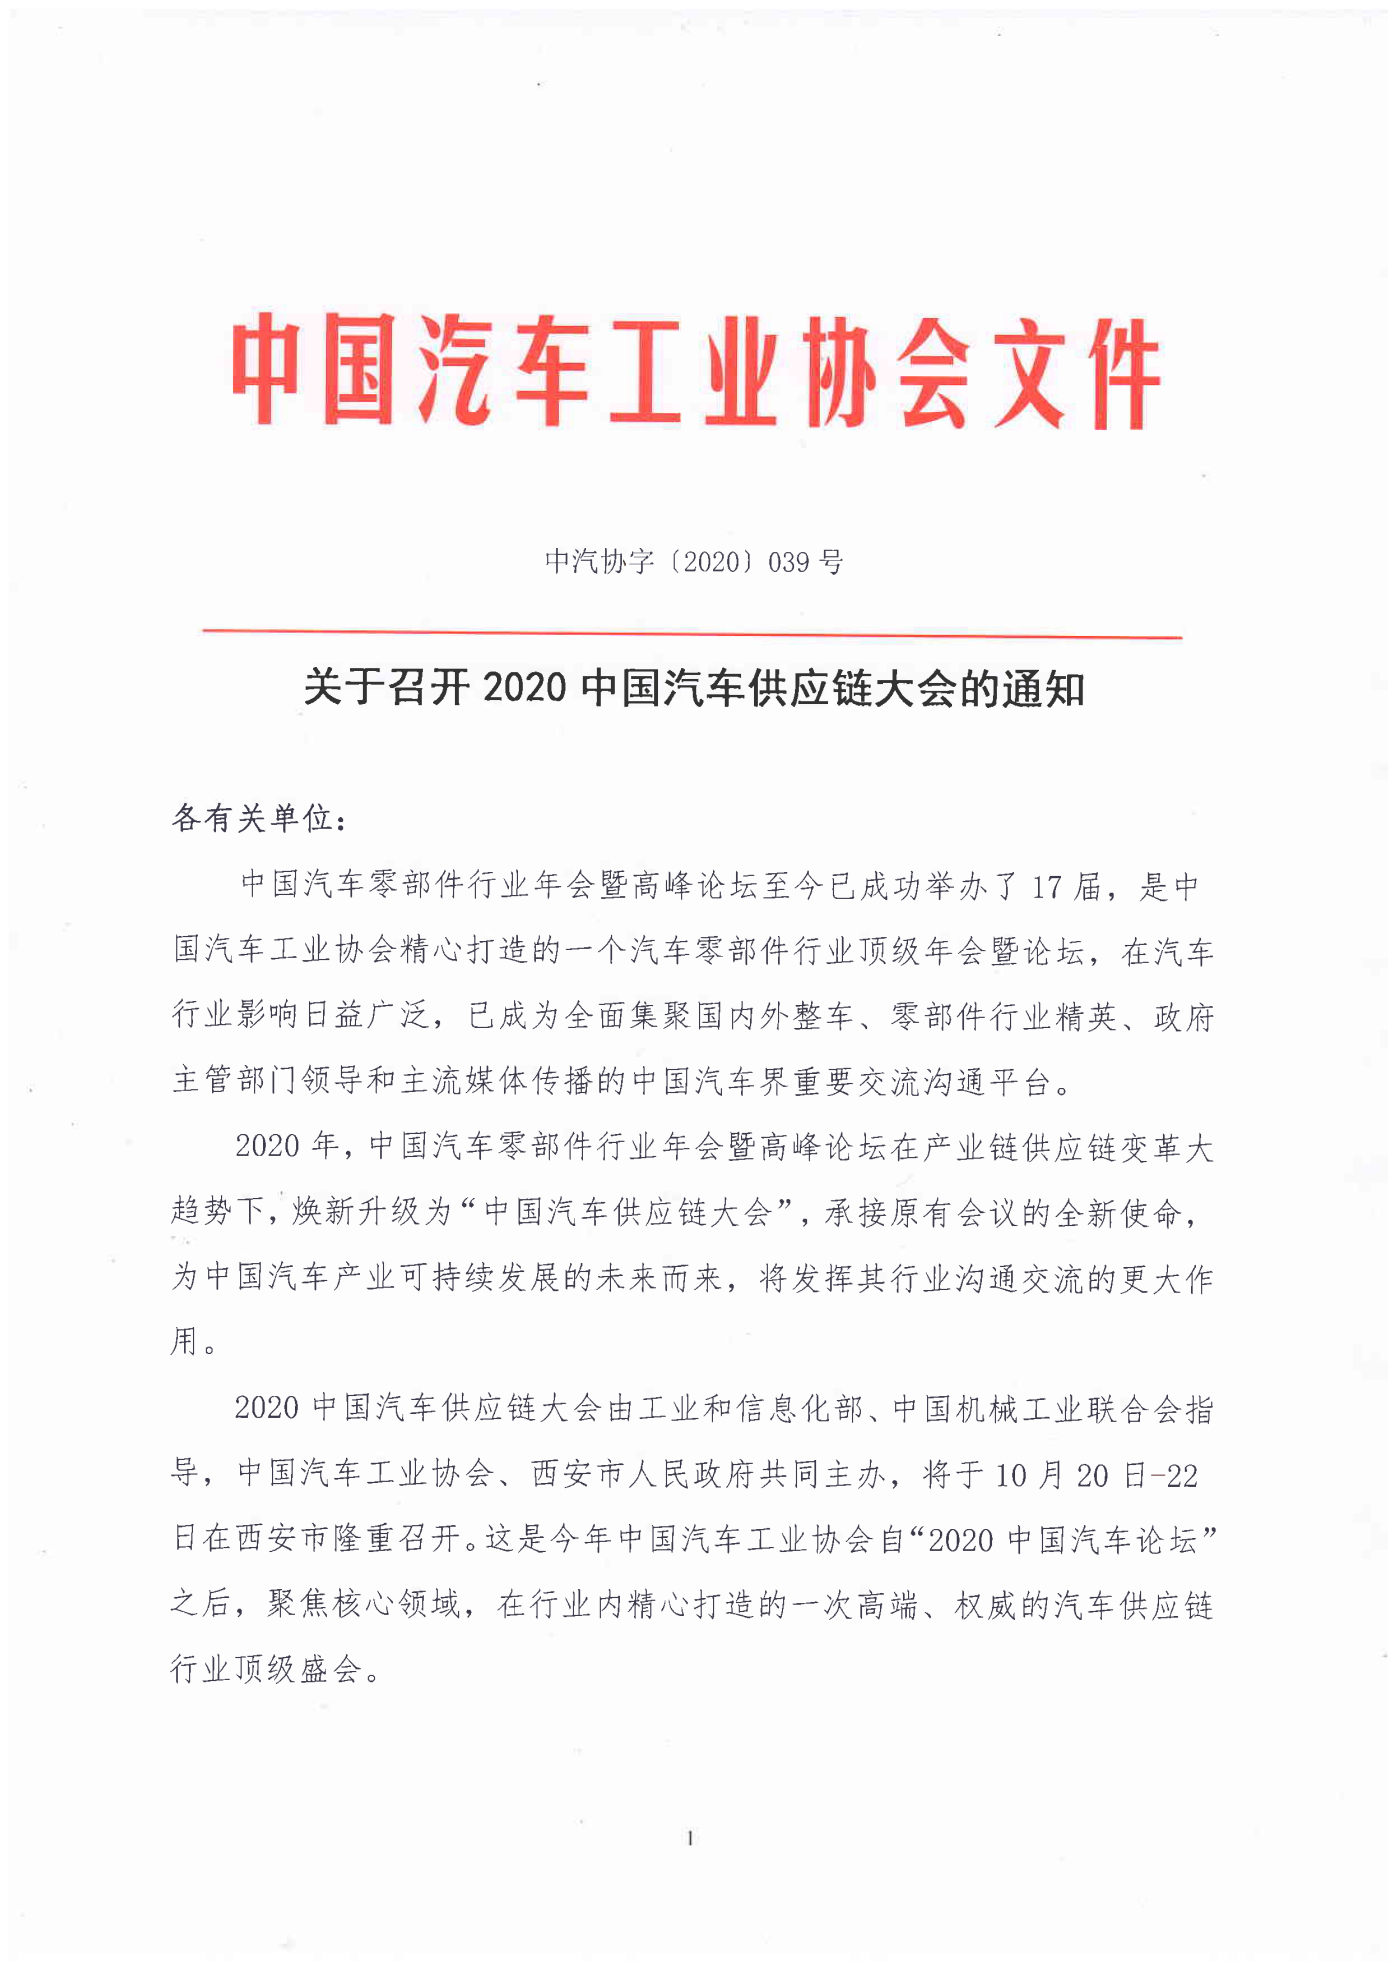 中汽协字〔2020〕039号关于召开2020中国汽车供应链大会的通知_00.png